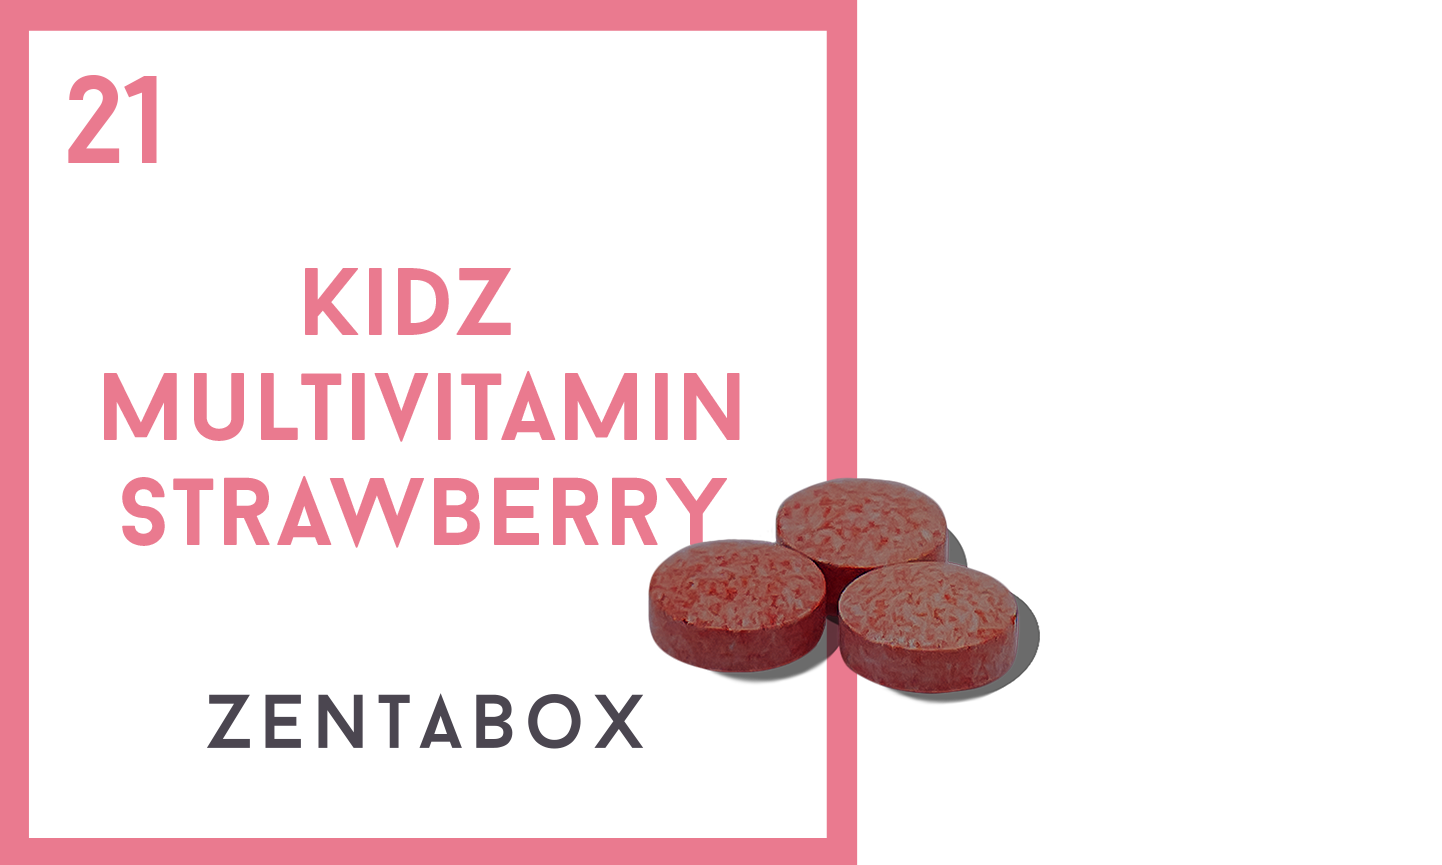 Kidz Multivitamin Strawberry